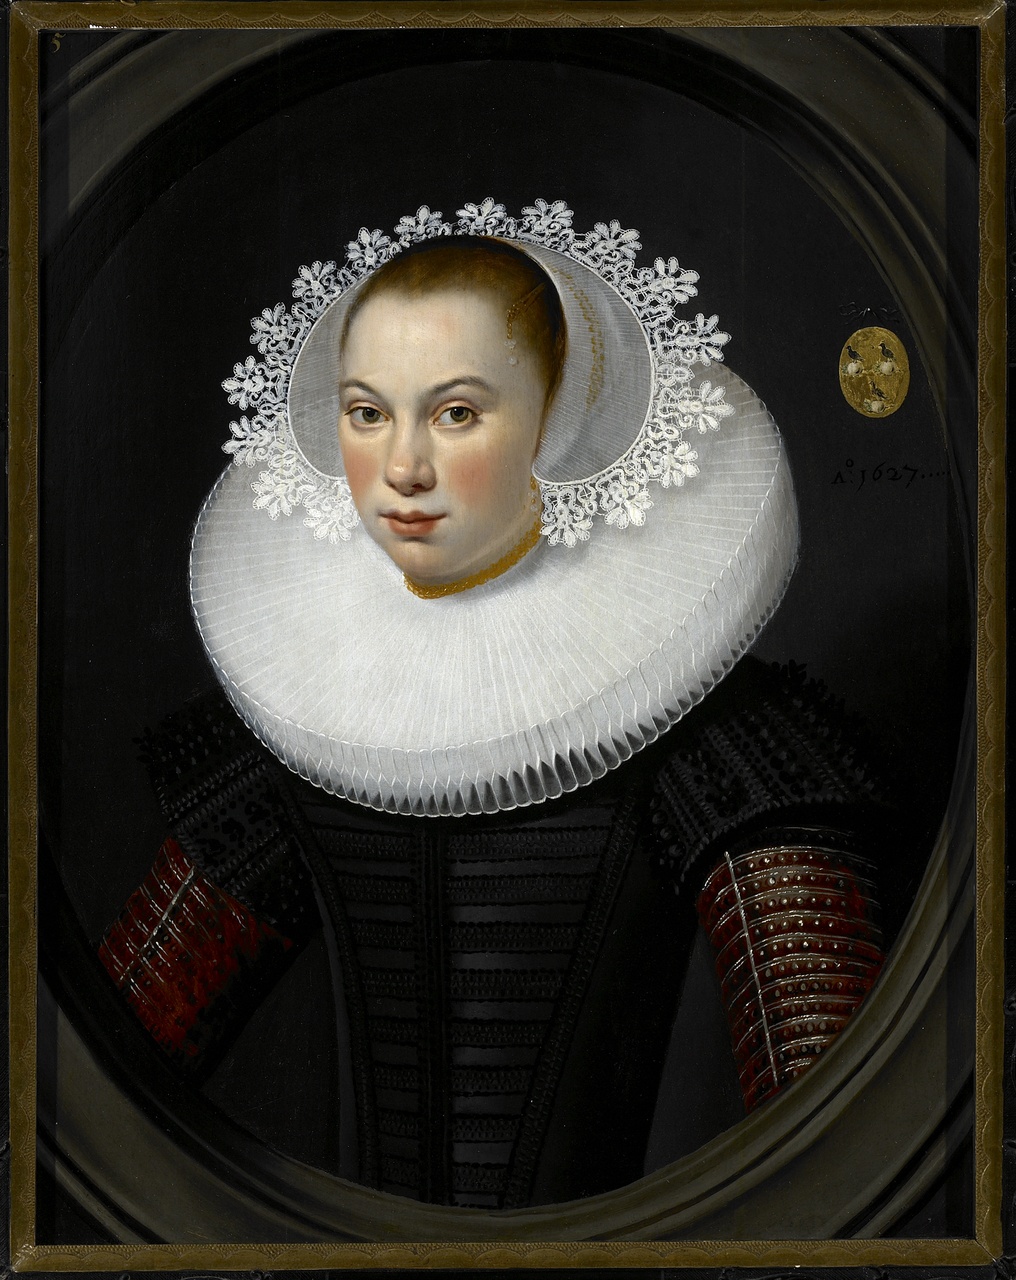 Anna de Looper (1611-1665), Salomon Mesdach